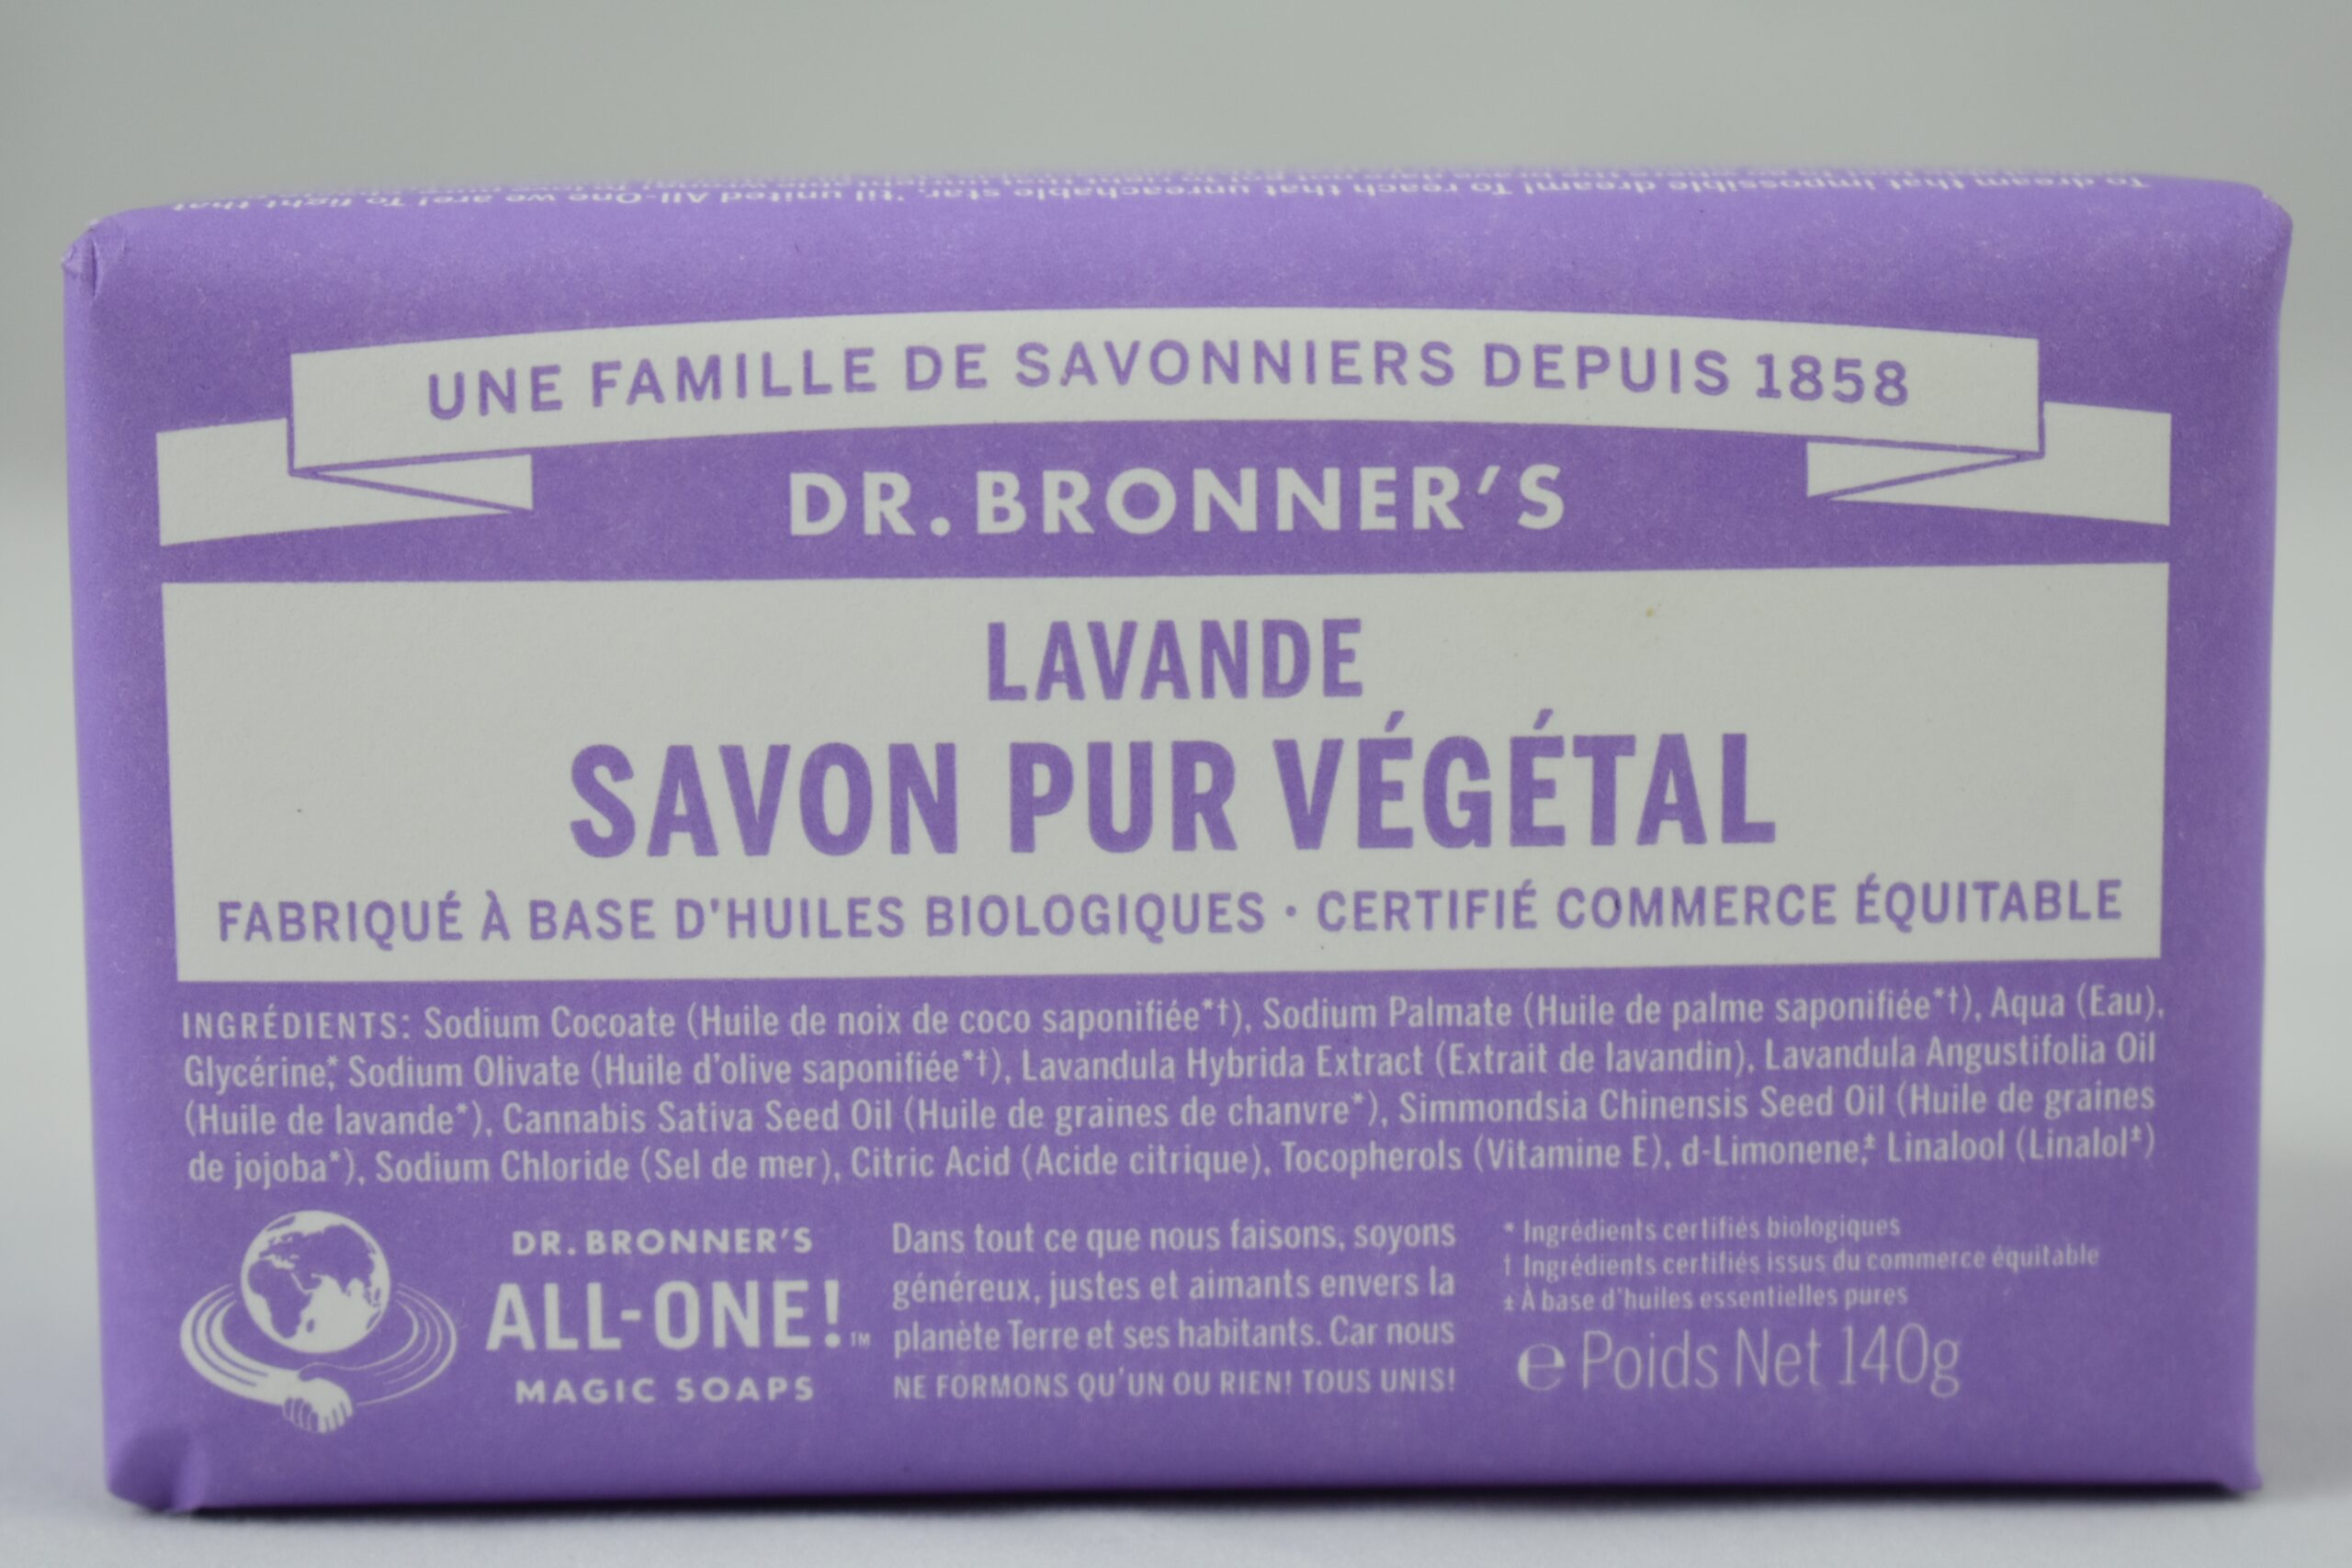 Savon pur végétal Dr bronner's Lavande